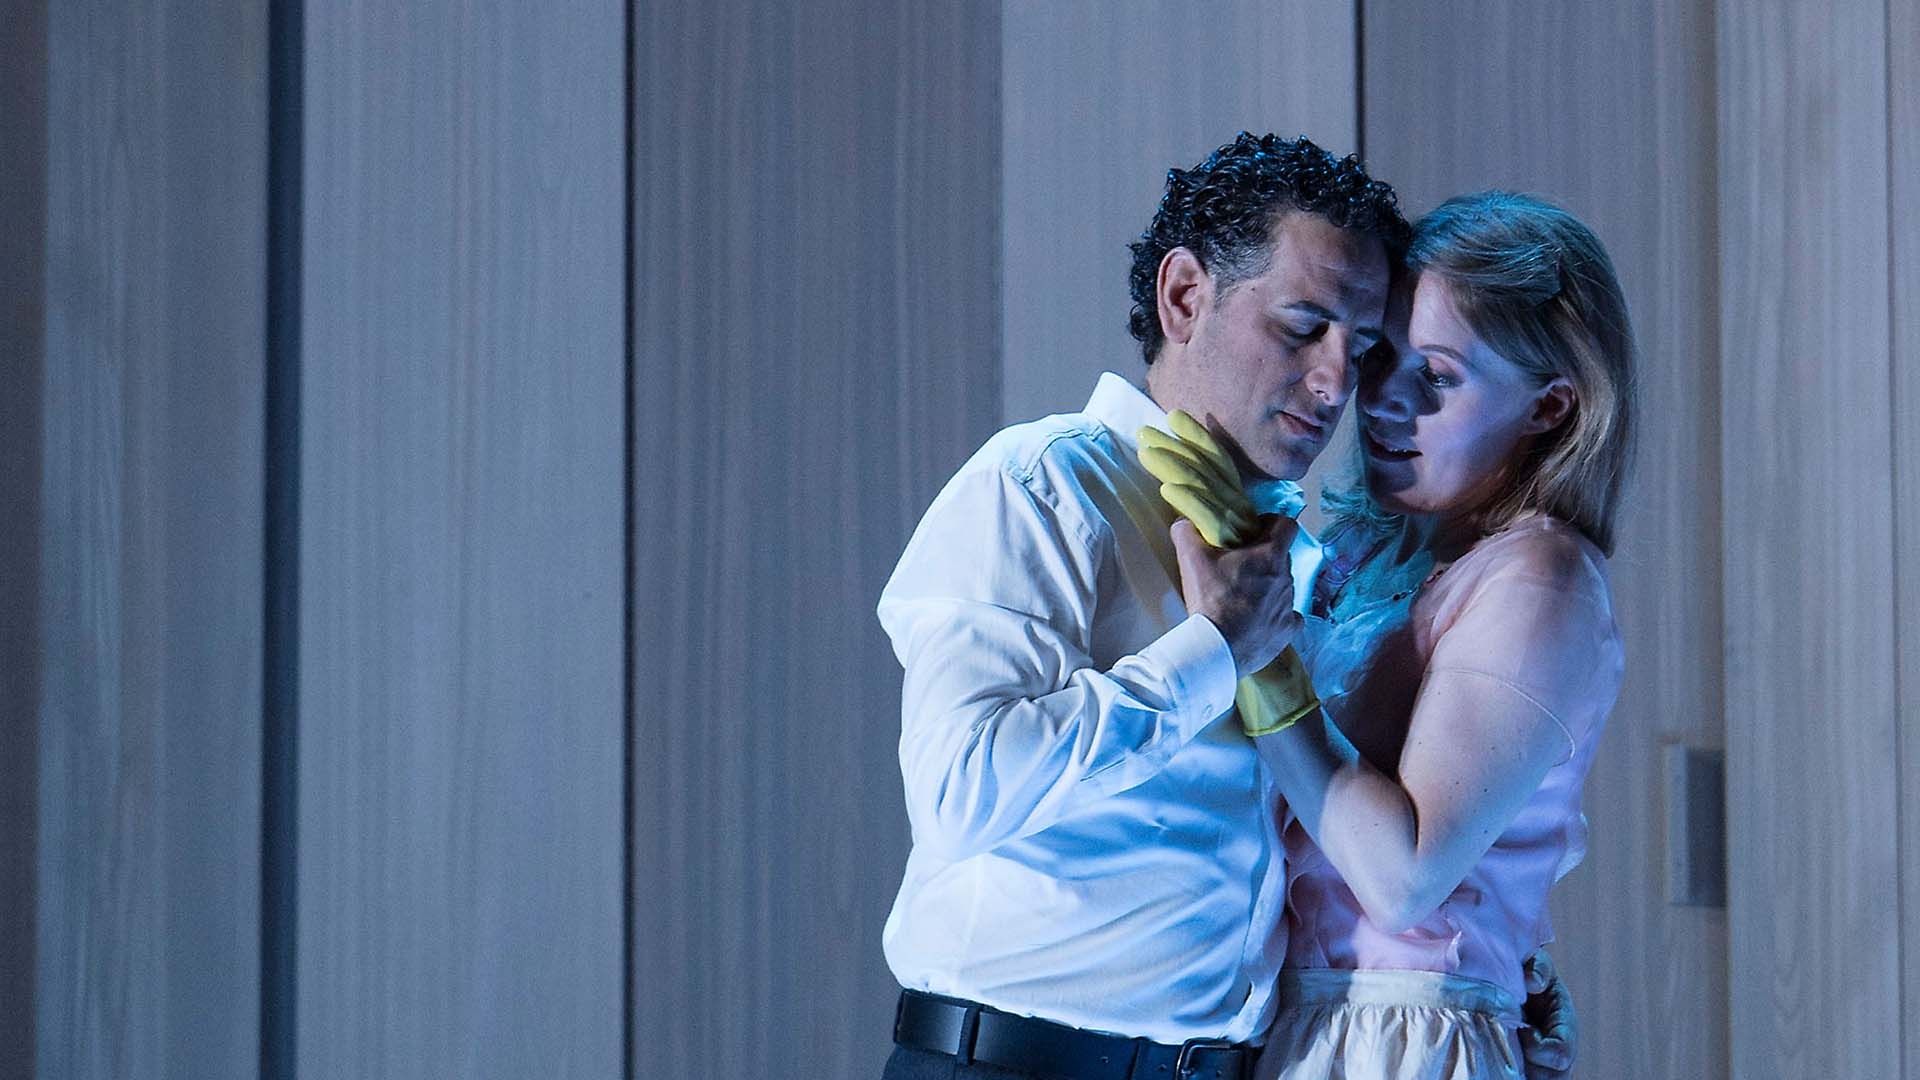 Foto zur Oper "Werther": Juan Diego Flórez (Werther) und Anna Stéphany (Charlotte)